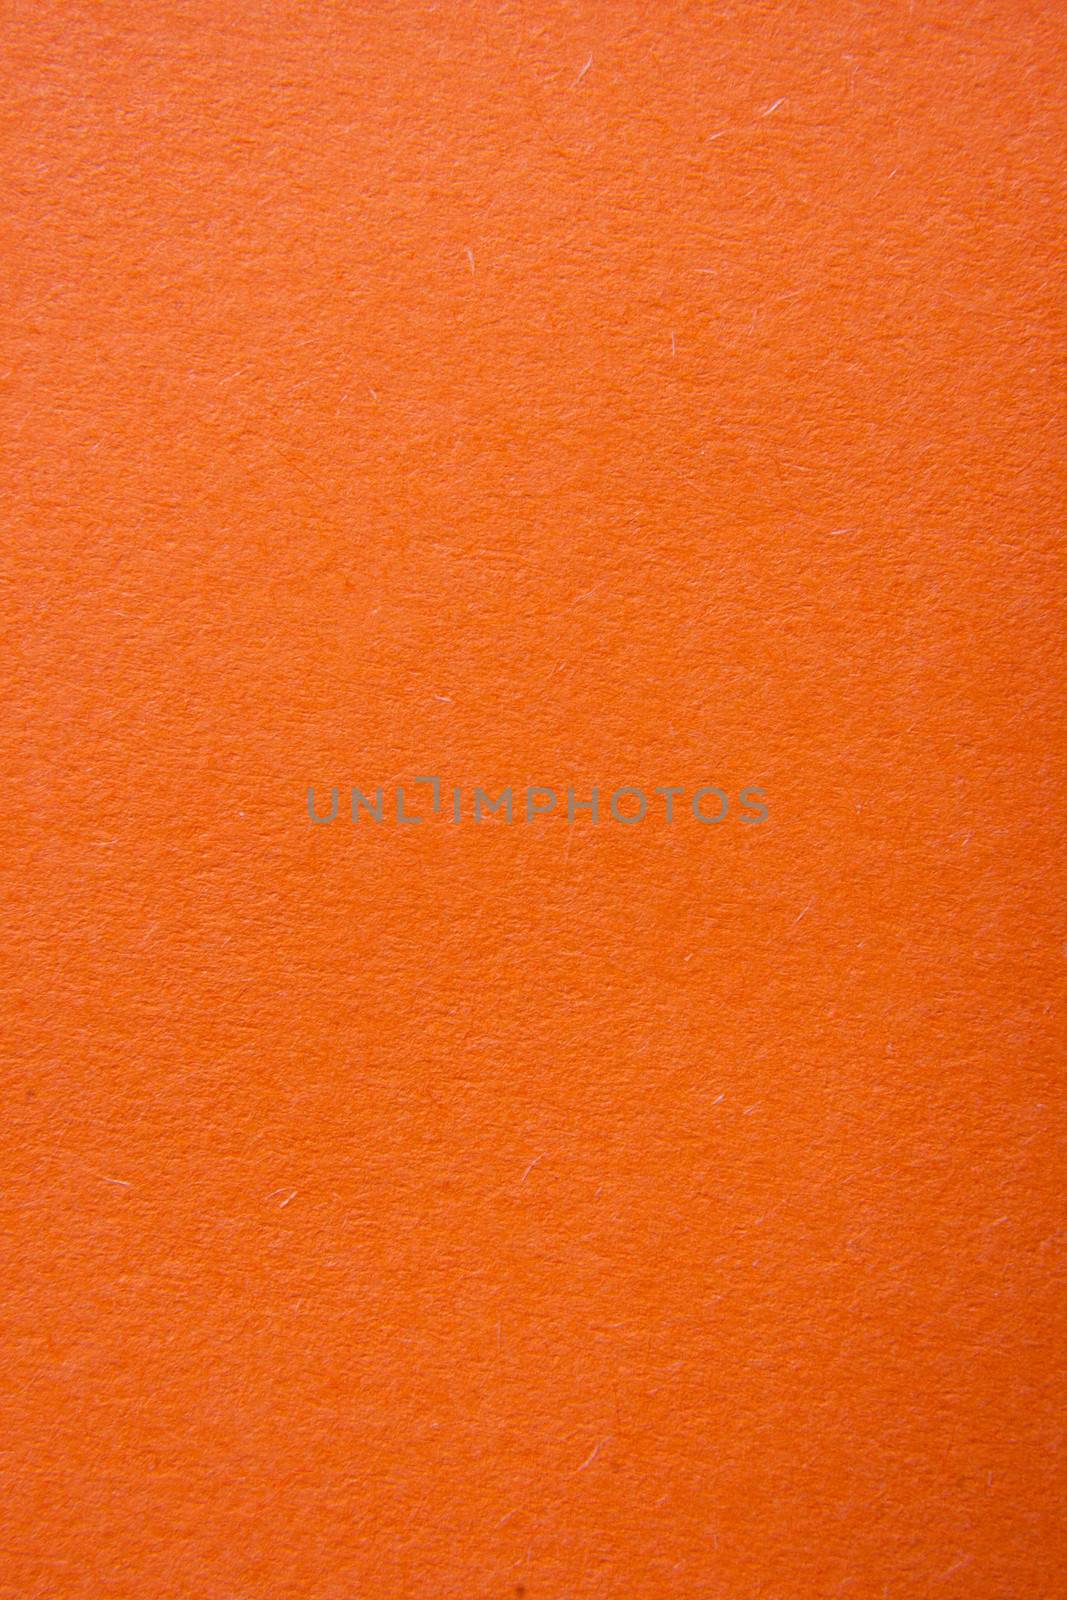 Orange paper textured grunge background